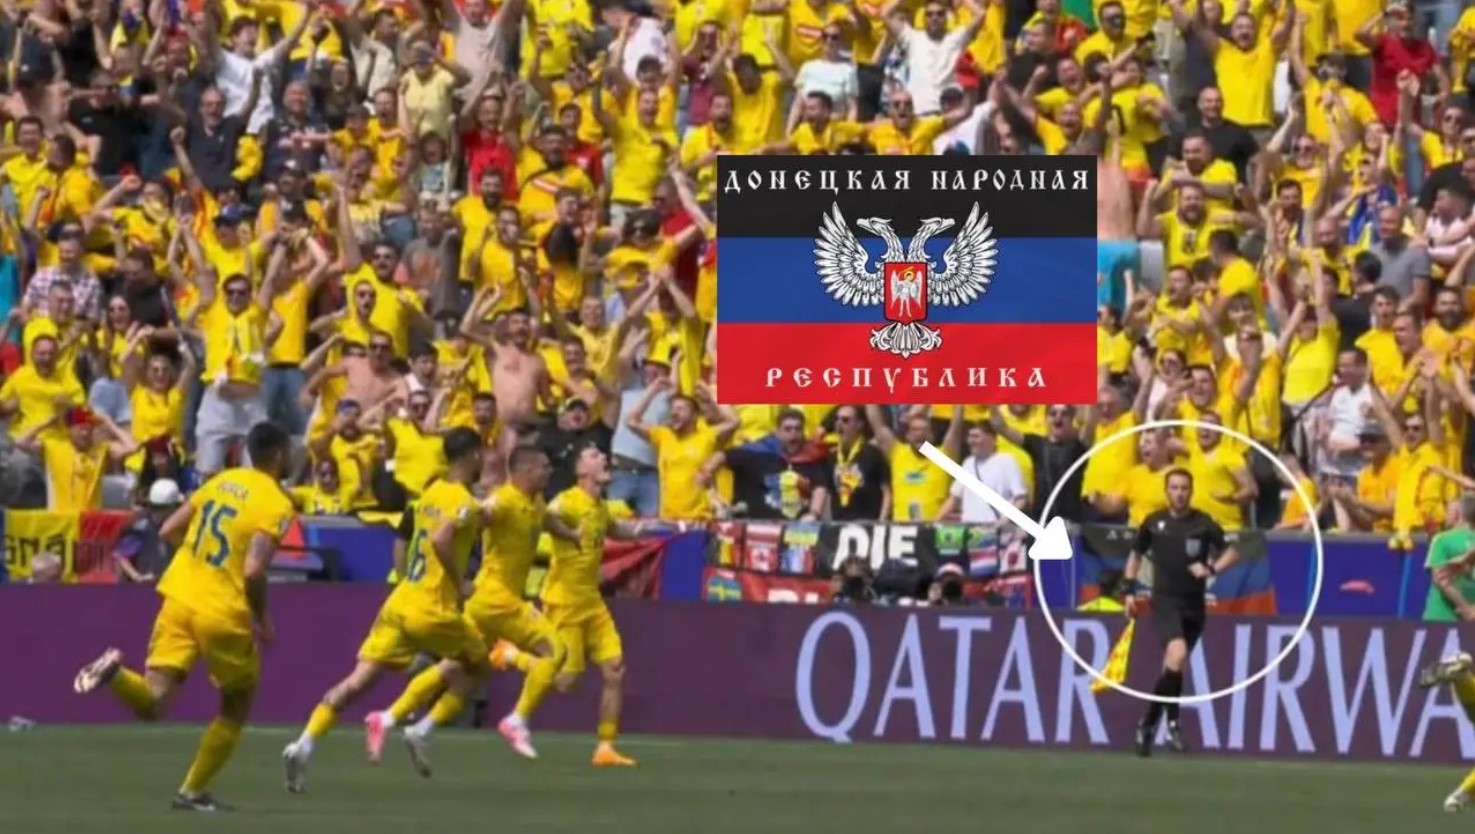 Распространившиеся в сети фото якобы с флагом ДНР на матче Румынии и Украины